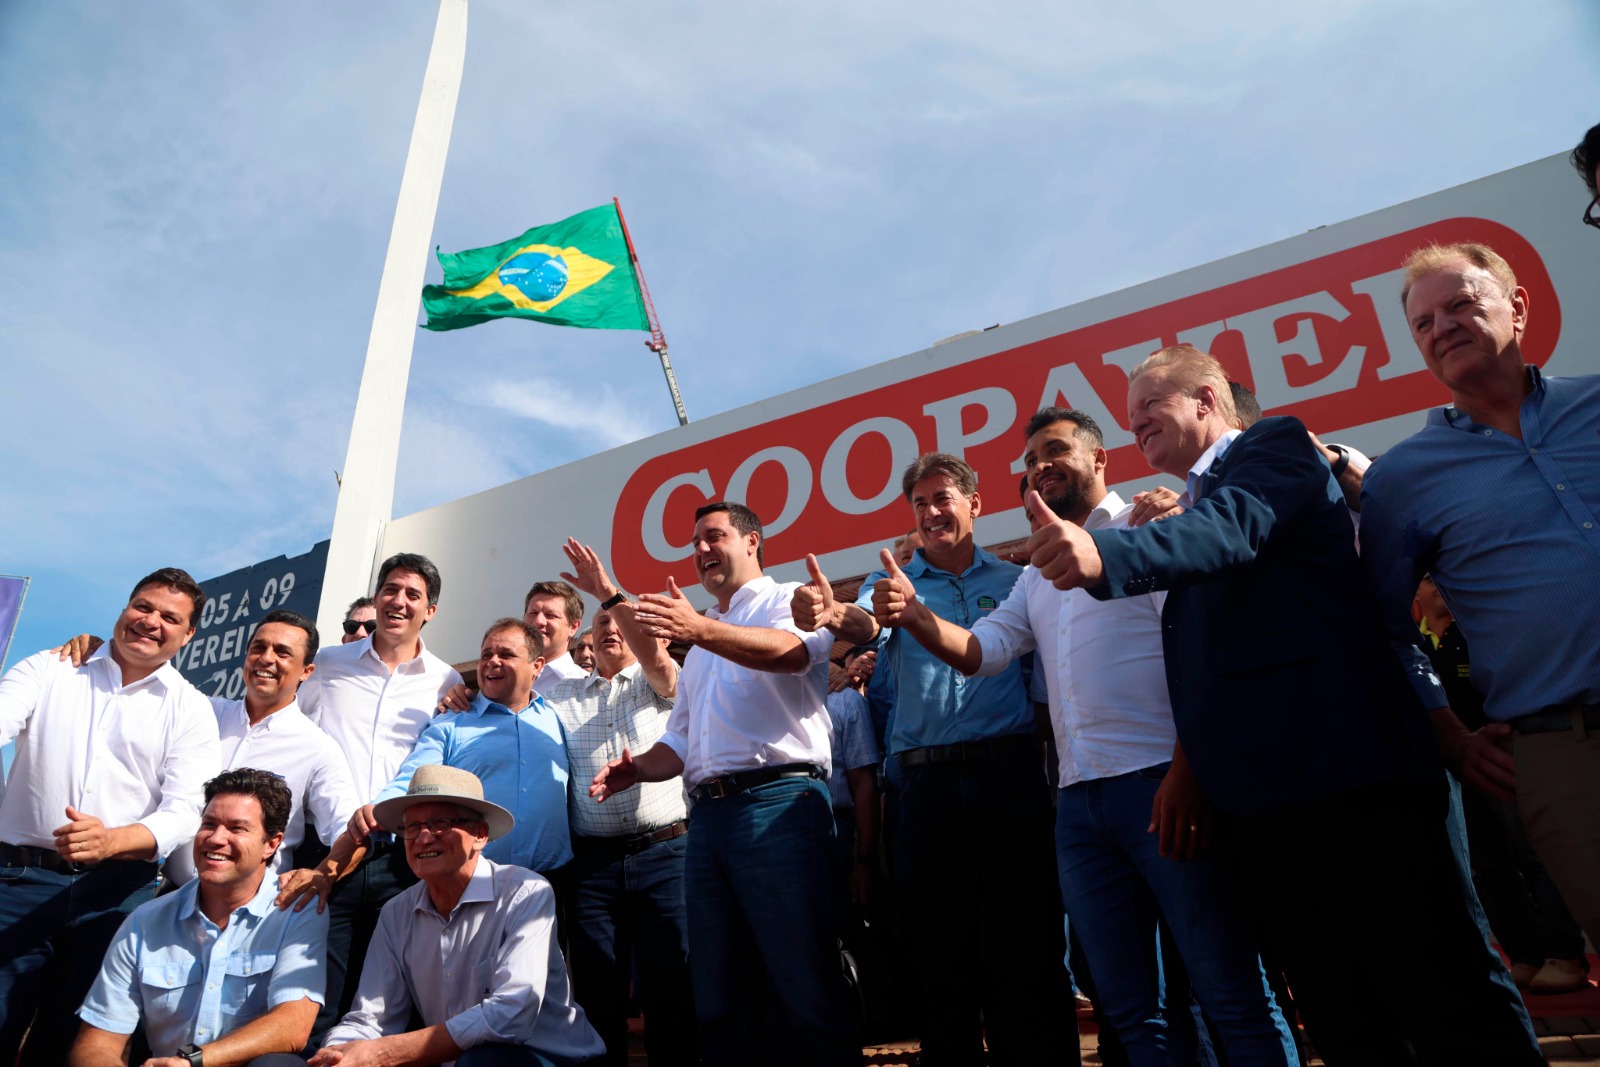 Agronegócio puxa bons números da economia do Paraná, afirma Ratinho Junior